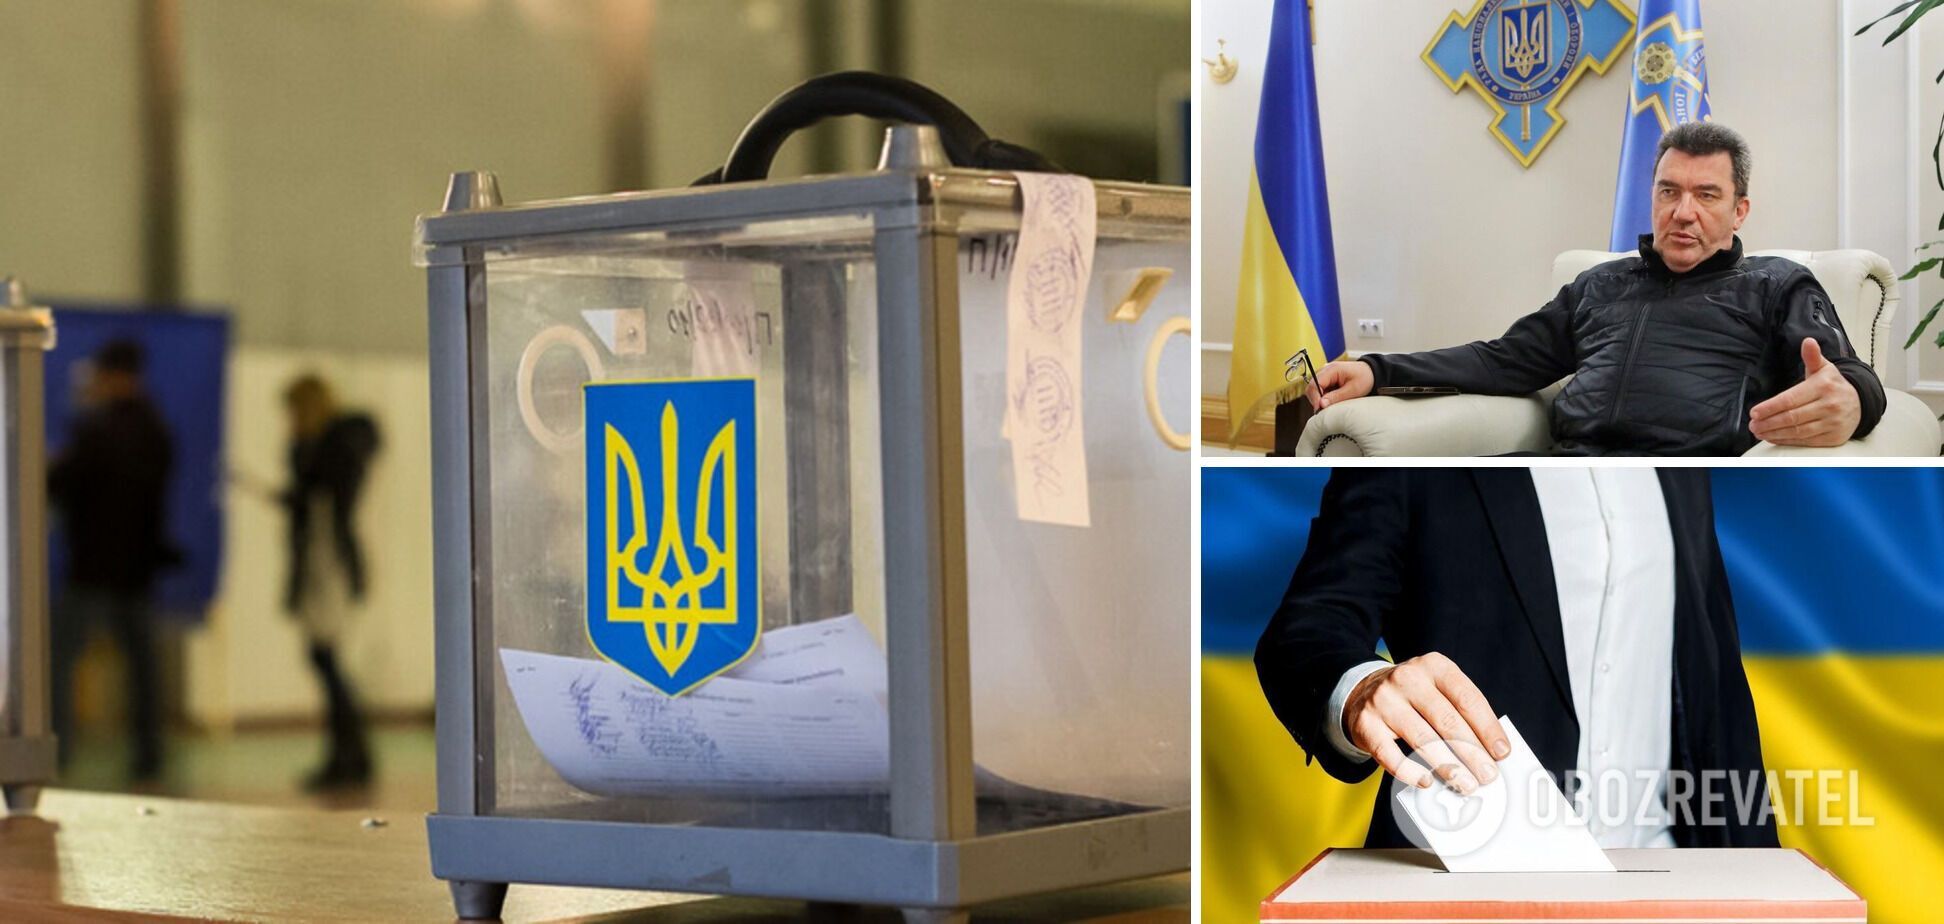 'Людям, которые дают нам советы, надо понимать': Данилов высказался о возможности проведения выборов во время войны